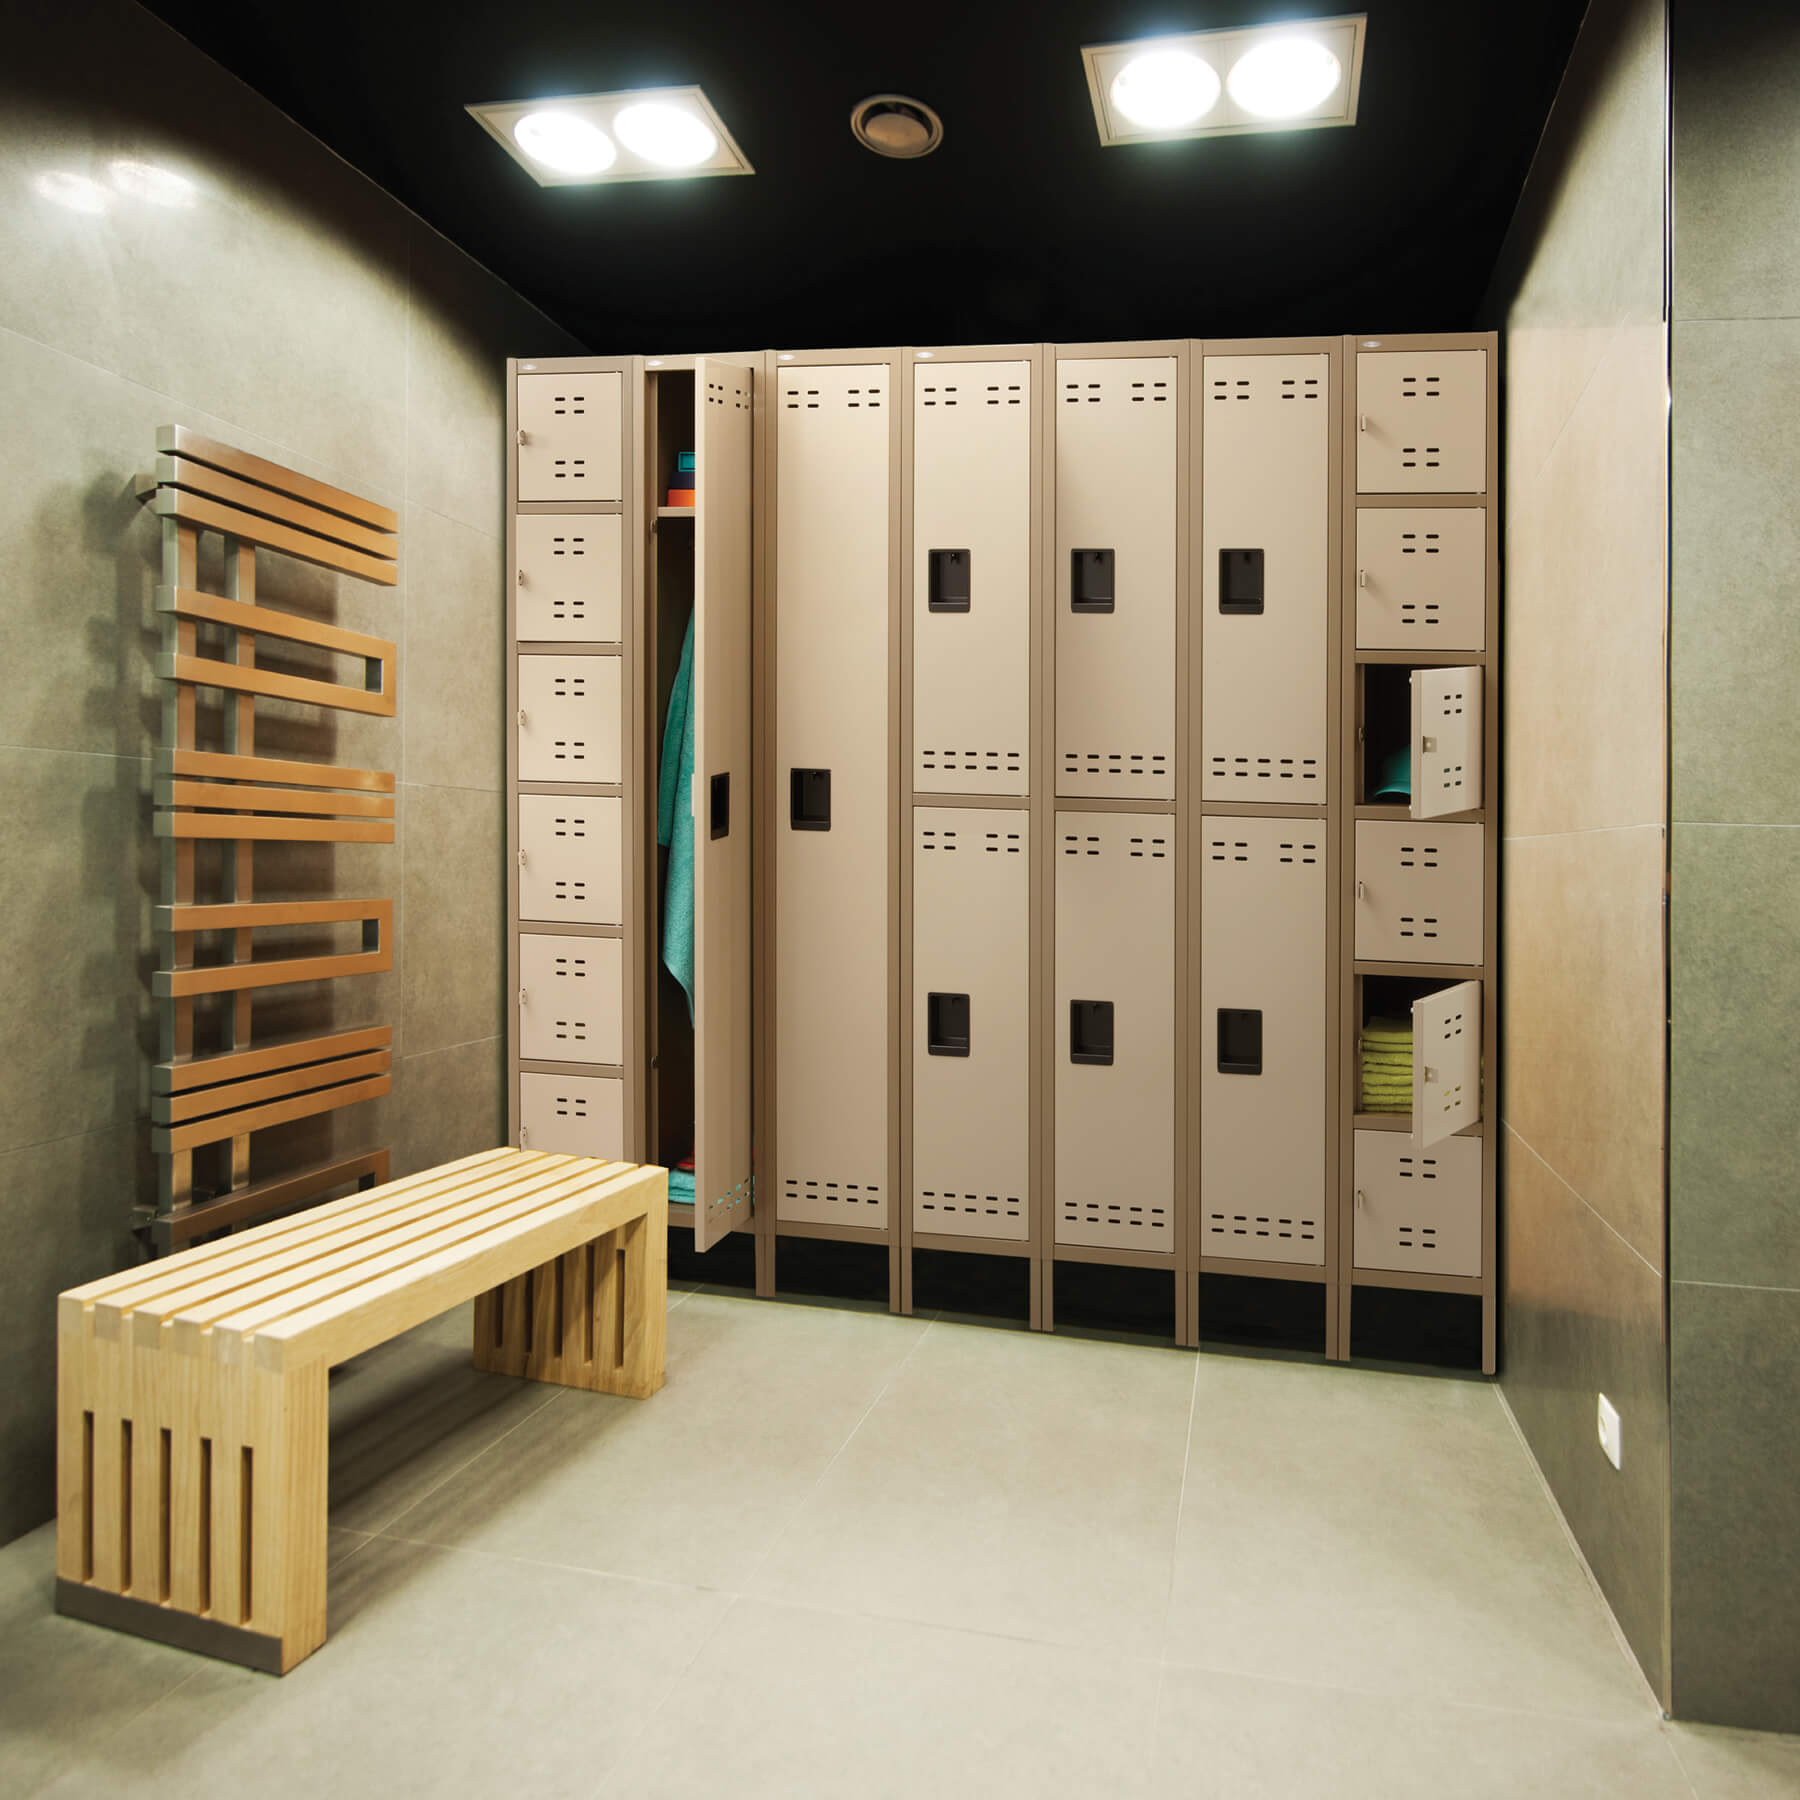 Locker room lockers environmental